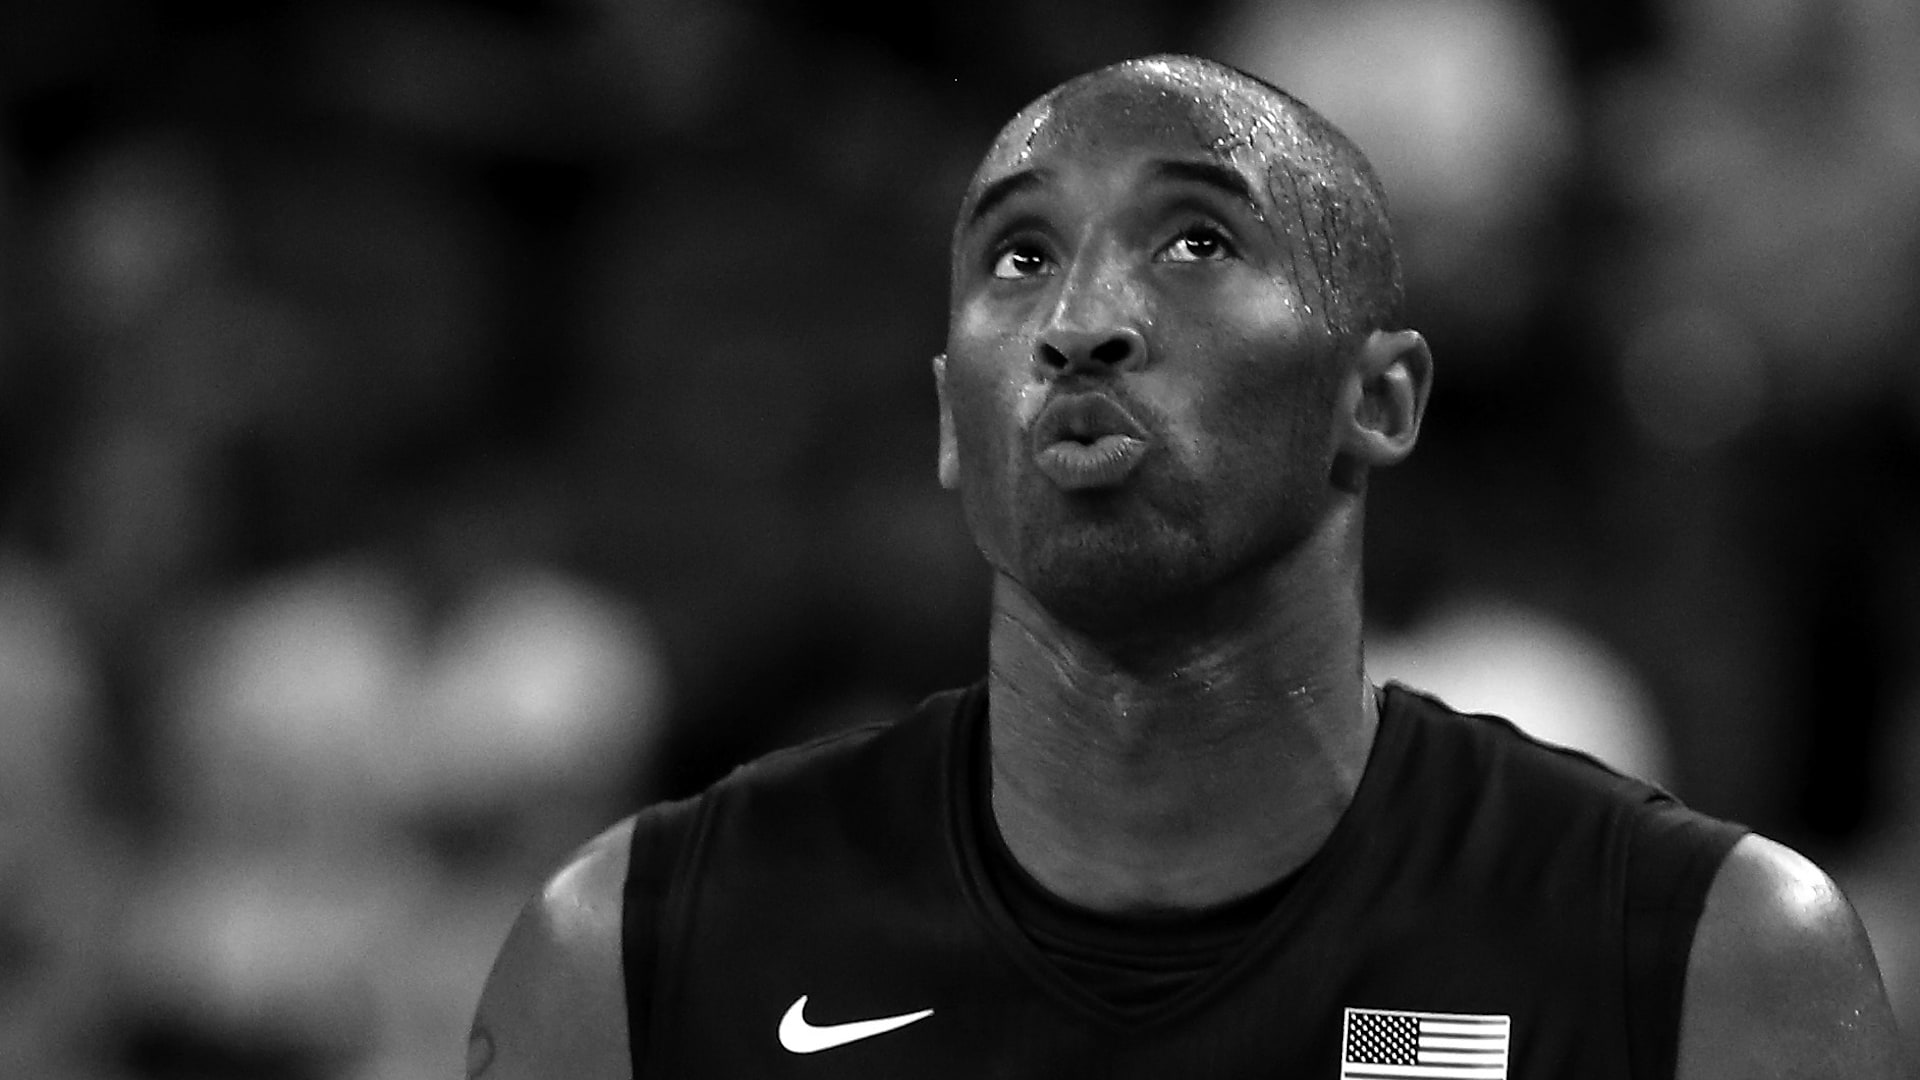 Kobe Bryant: The Black Mamba's last stand